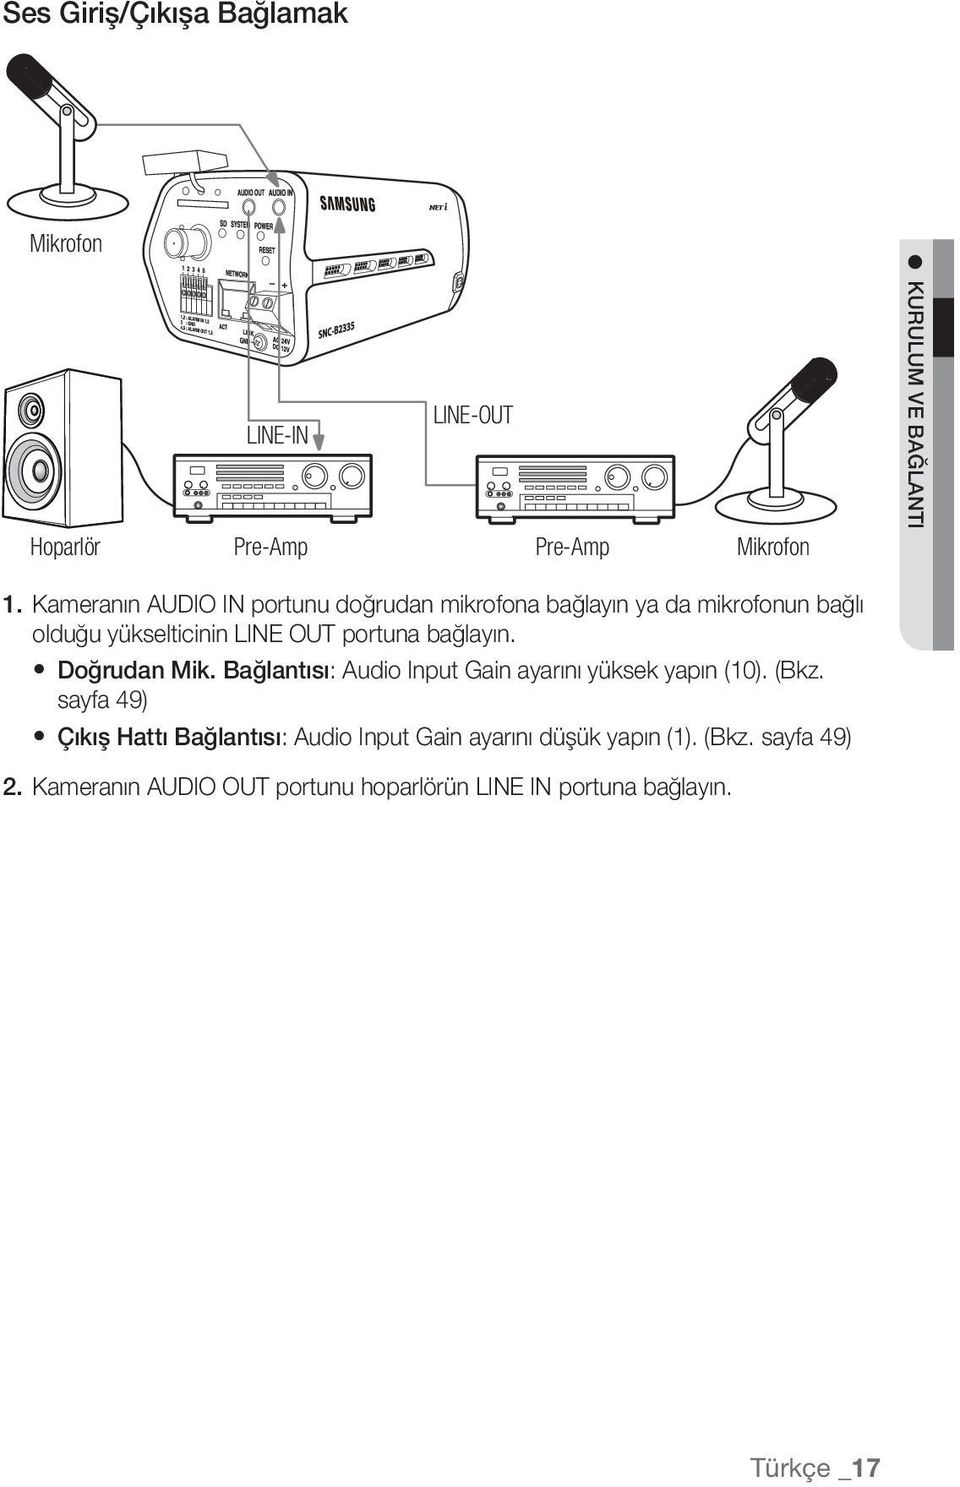 bağlayın. Doğrudan Mik. Bağlantısı: Audio Input Gain ayarını yüksek yapın (10). (Bkz.